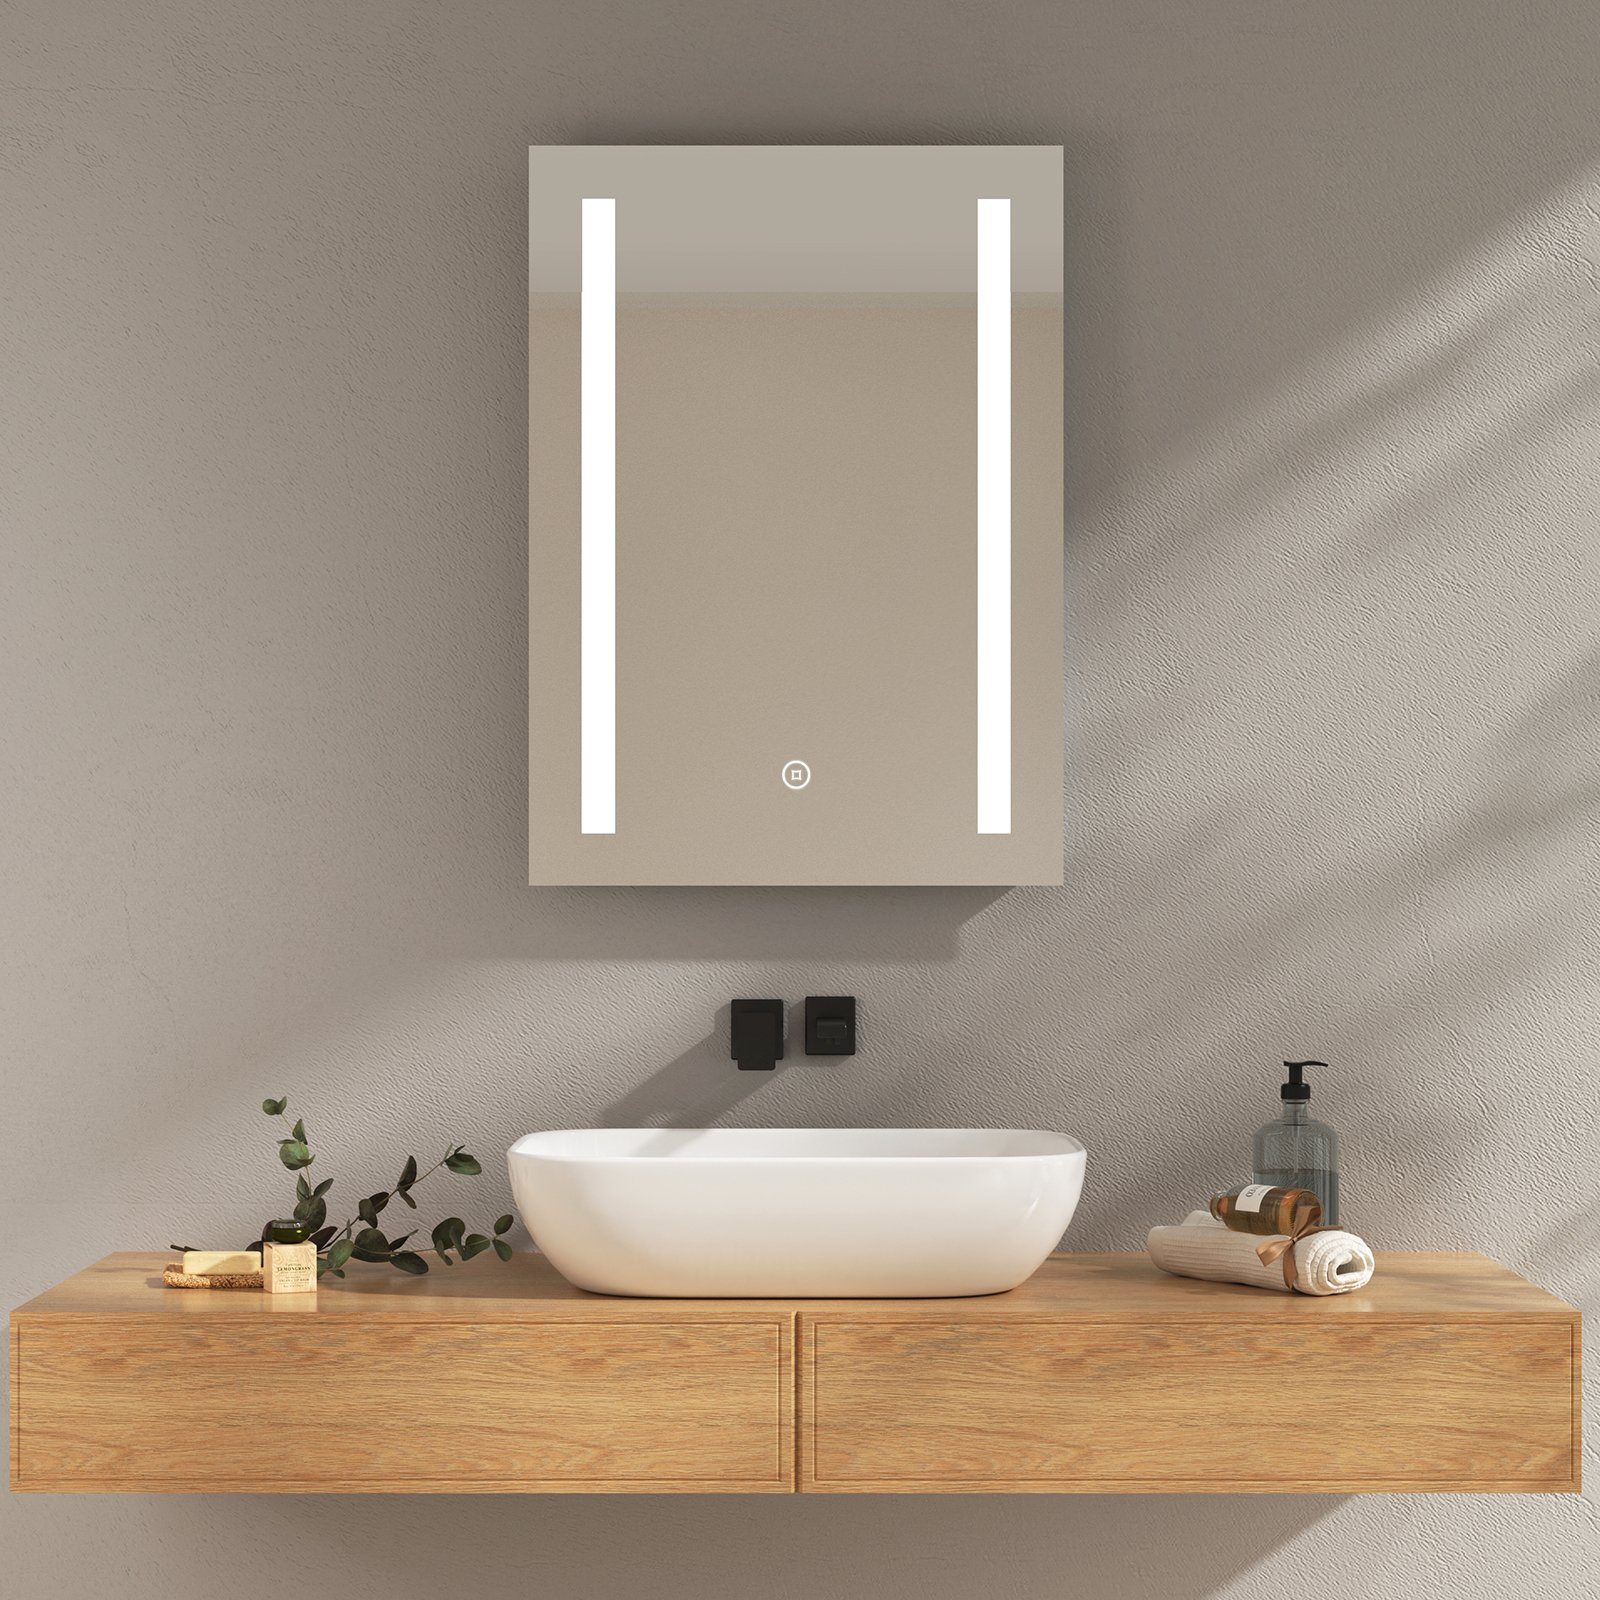 EMKE Badspiegel LED Wandspiegel mit Beleuchtung Modell 01 (Touch-schalter), mit Kaltweiß oder Warmweiß Beleuchtung und Beschlagfrei IP44